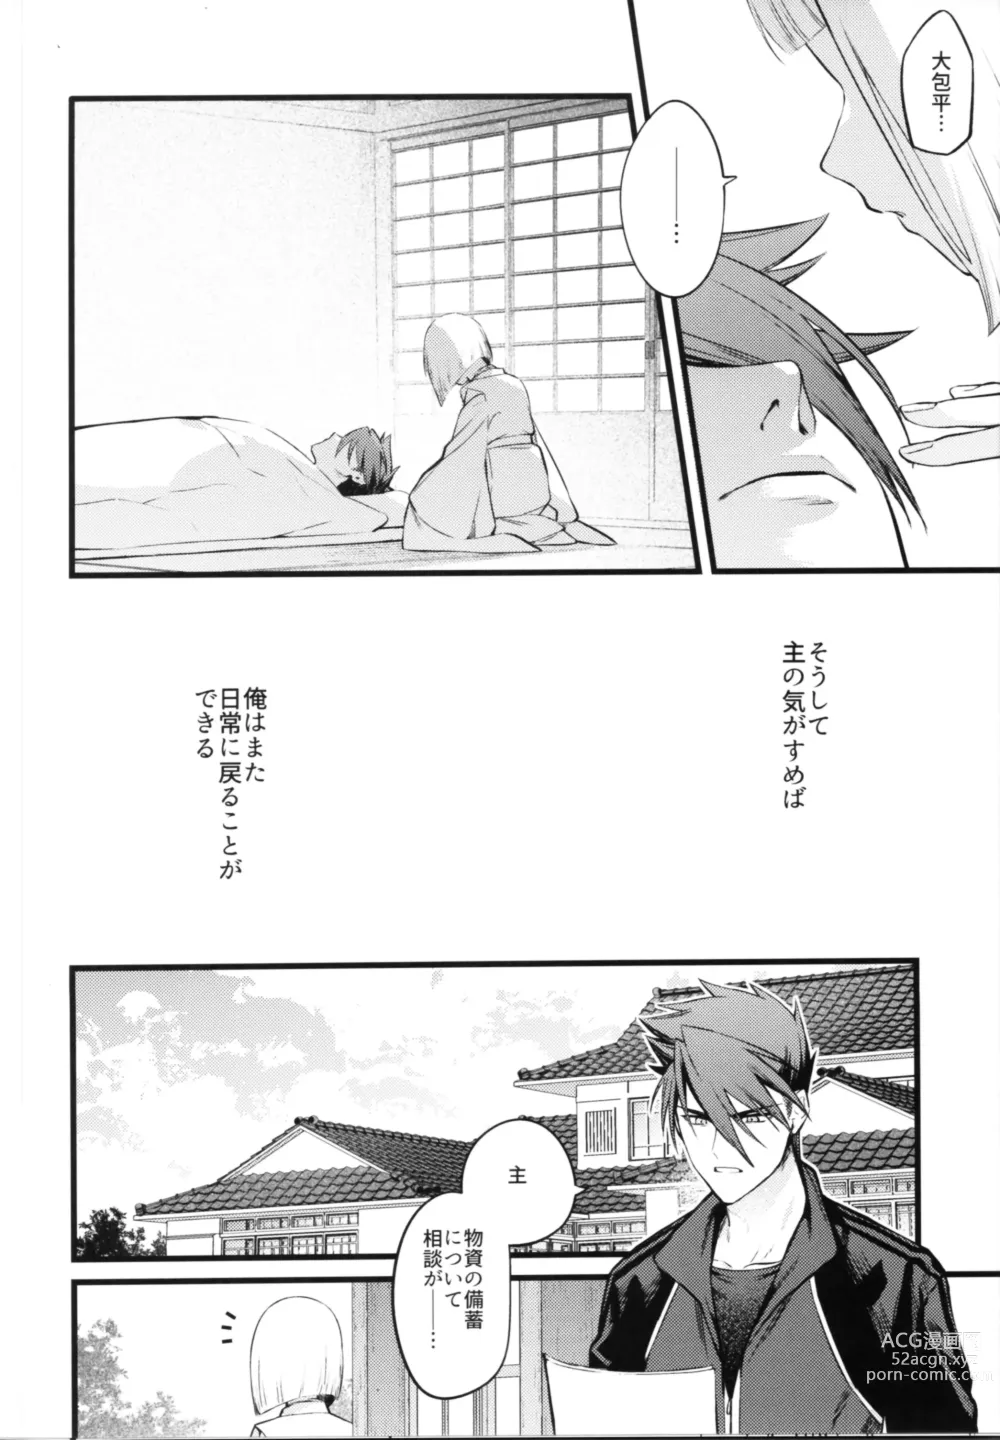 Page 11 of doujinshi Kamigakari no nagusami